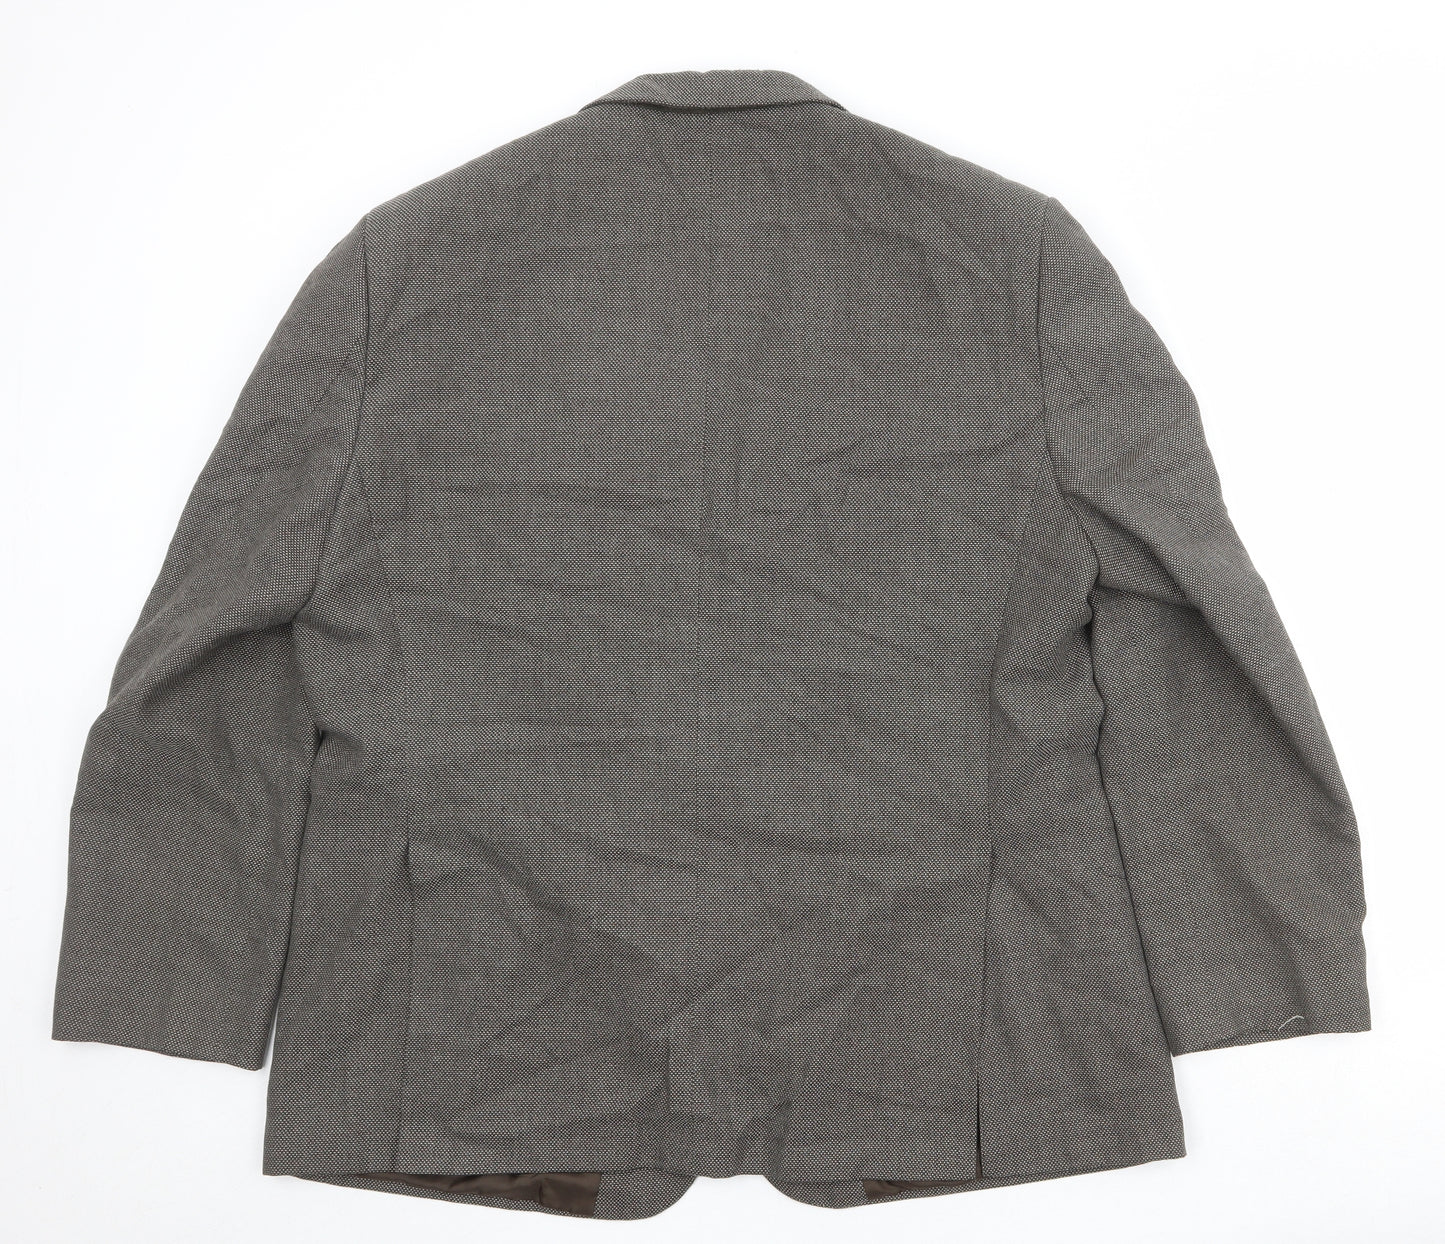 Marks and Spencer Mens Brown Polyester Jacket Suit Jacket Size 46 Regular